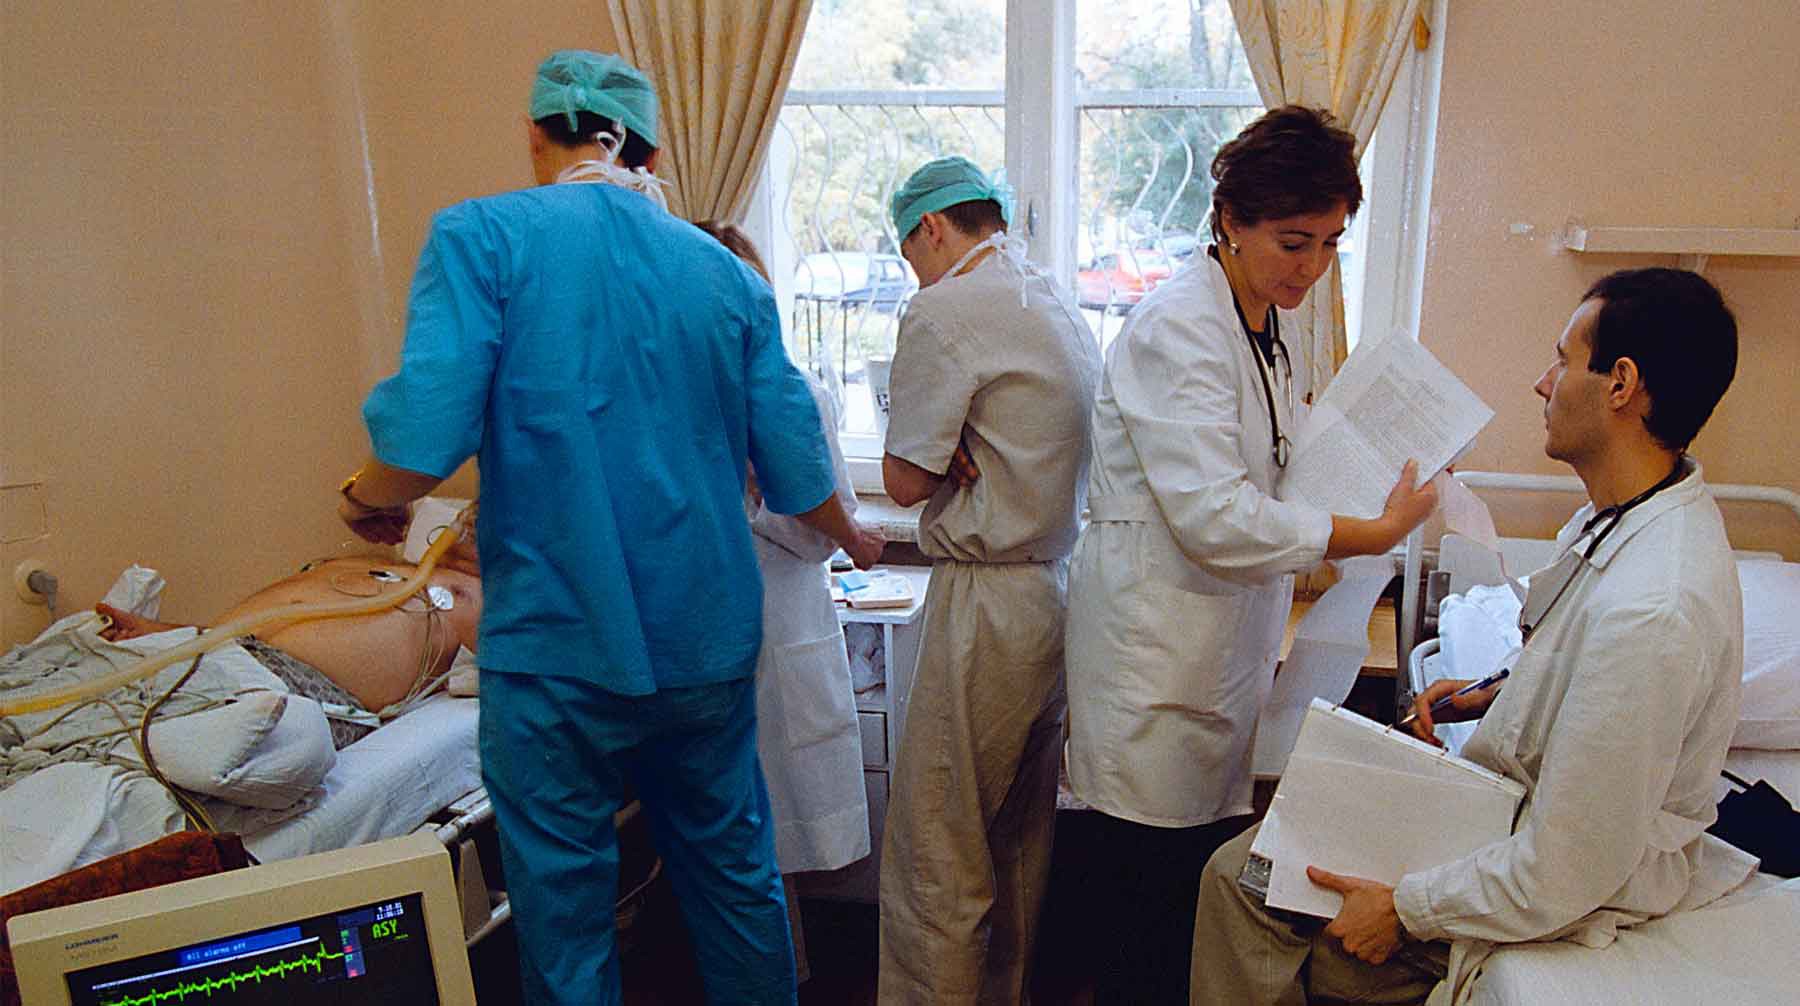 Dailystorm - ФСБ уличила врачей Росгвардии в подделке диагнозов за взятки